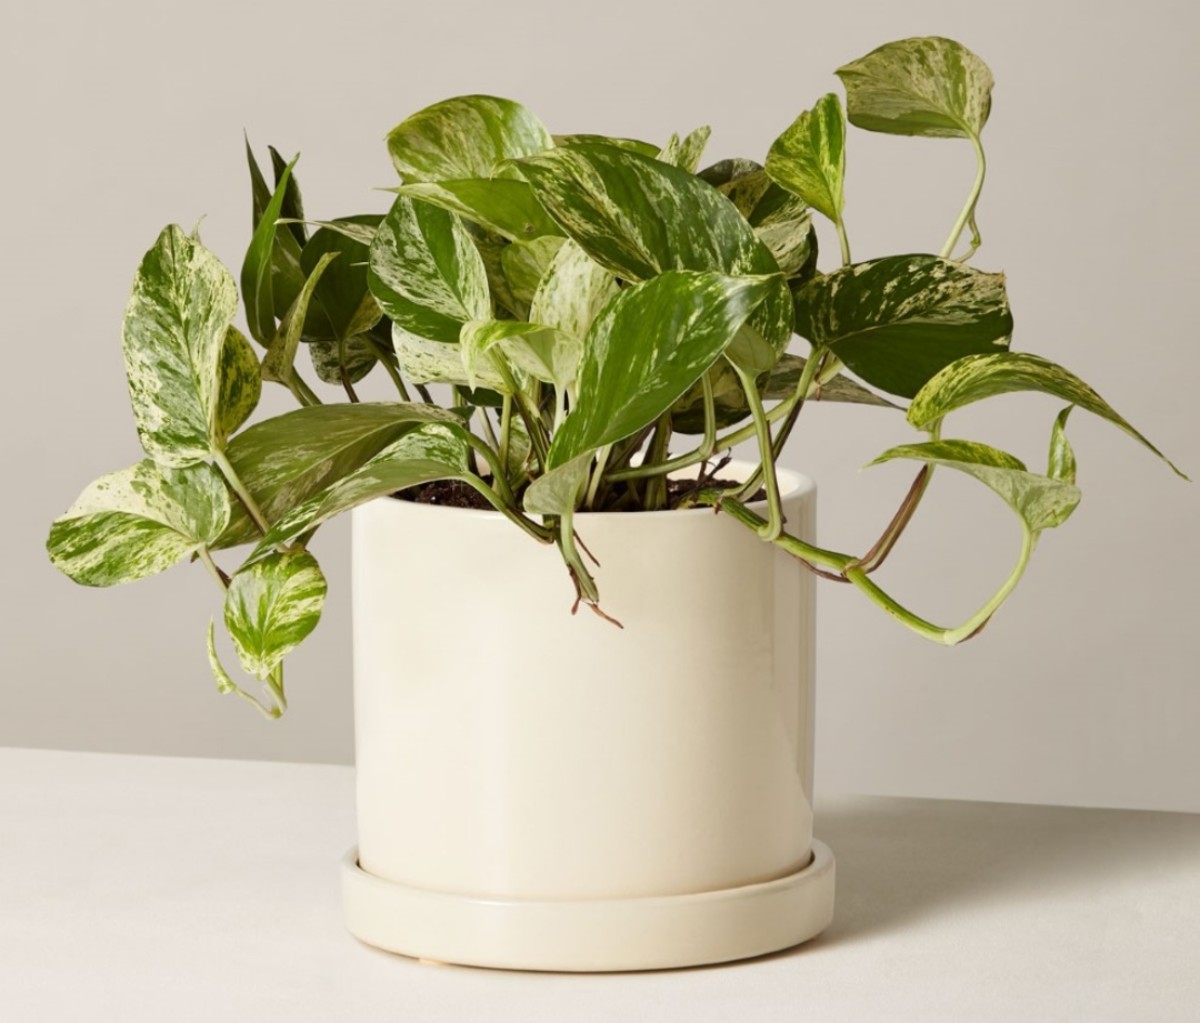 pothos houseplant in a white pot